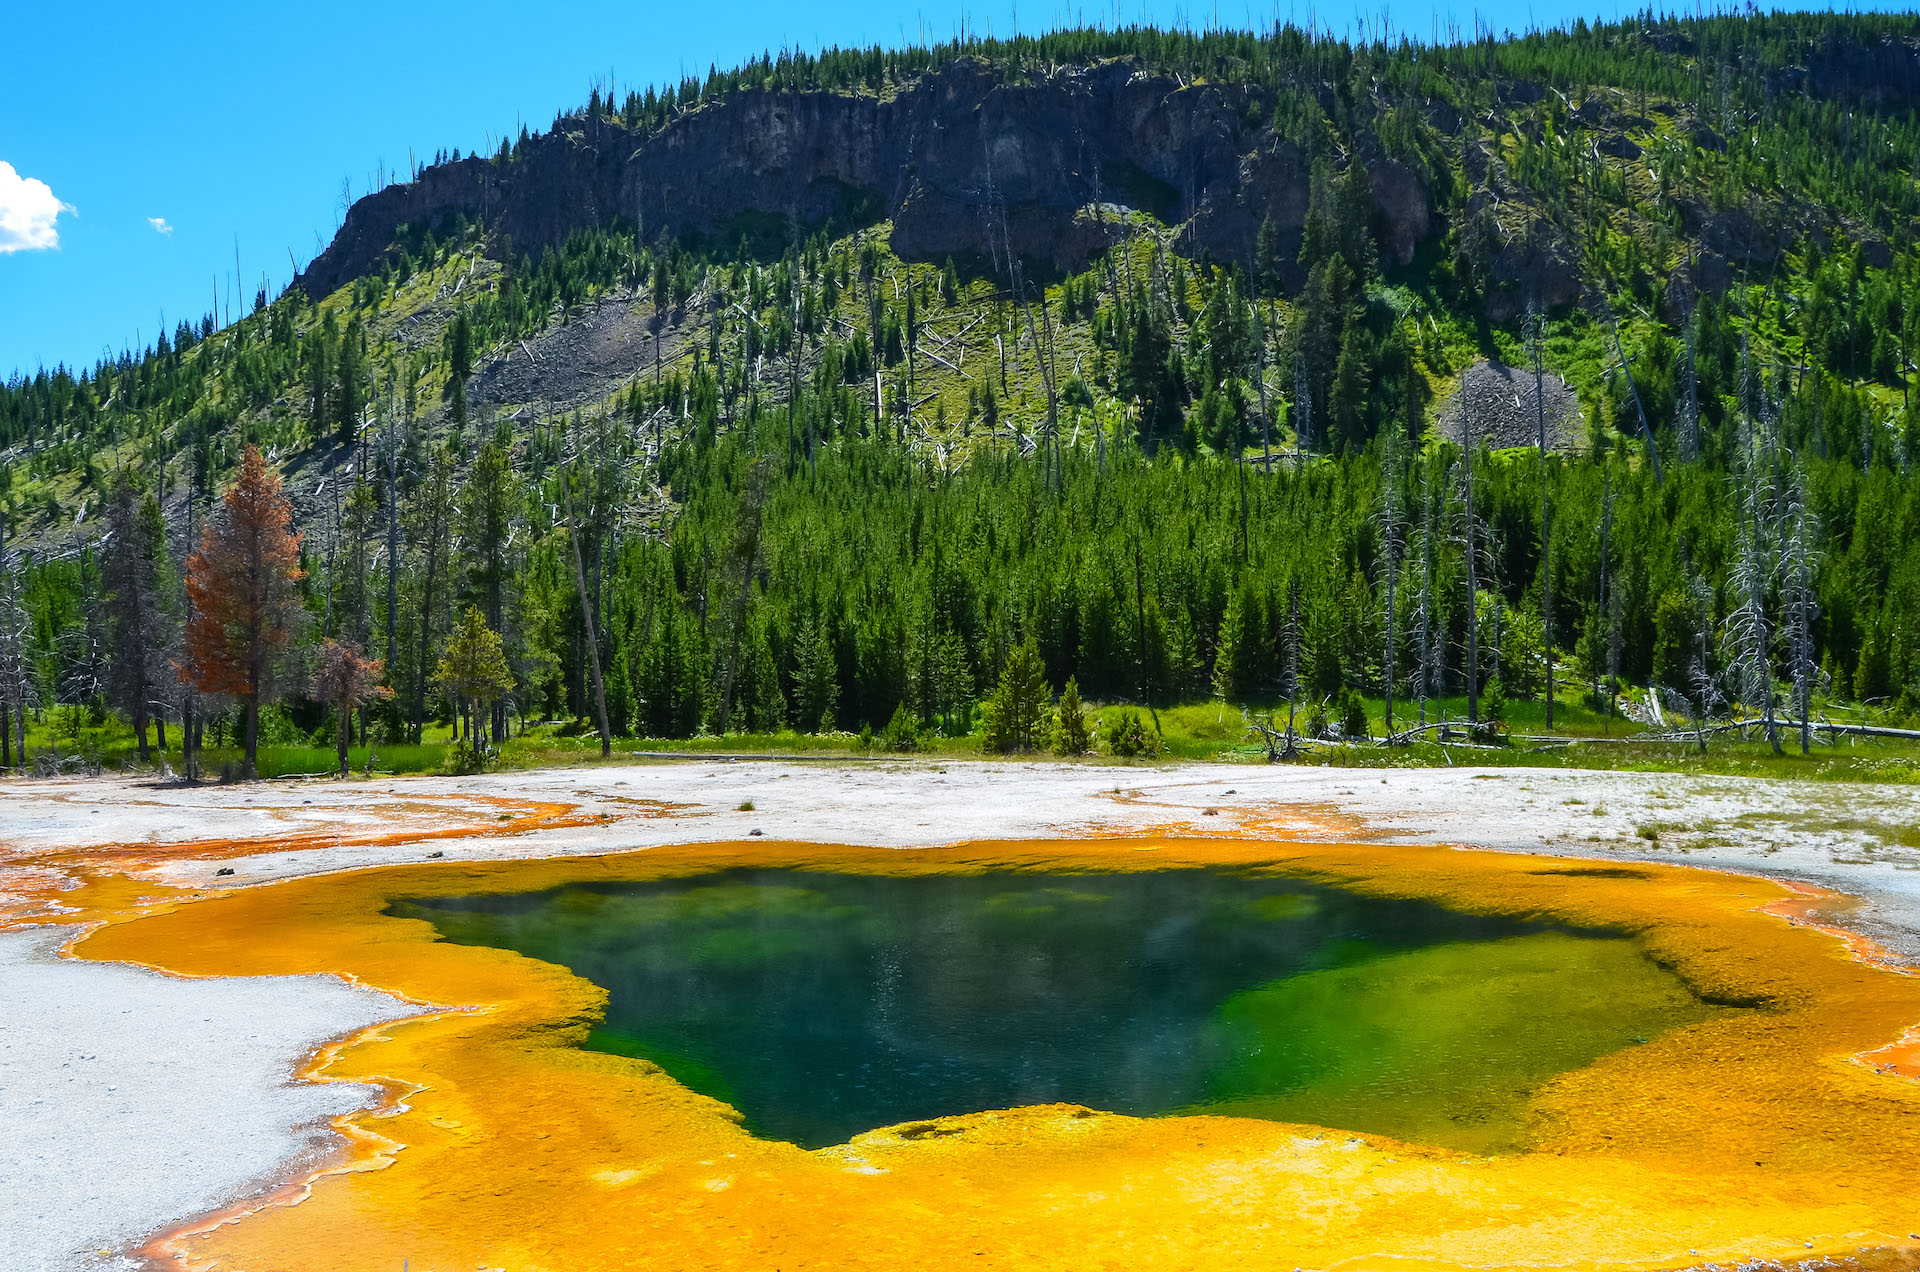 O parque Yellowstone, com um milhão de hectares de florestas densas, espalhadas principalmente em Wyoming, é repleto em fenômenos naturais exóticos. A maior fonte quente do parque é a Grand Prismatic/